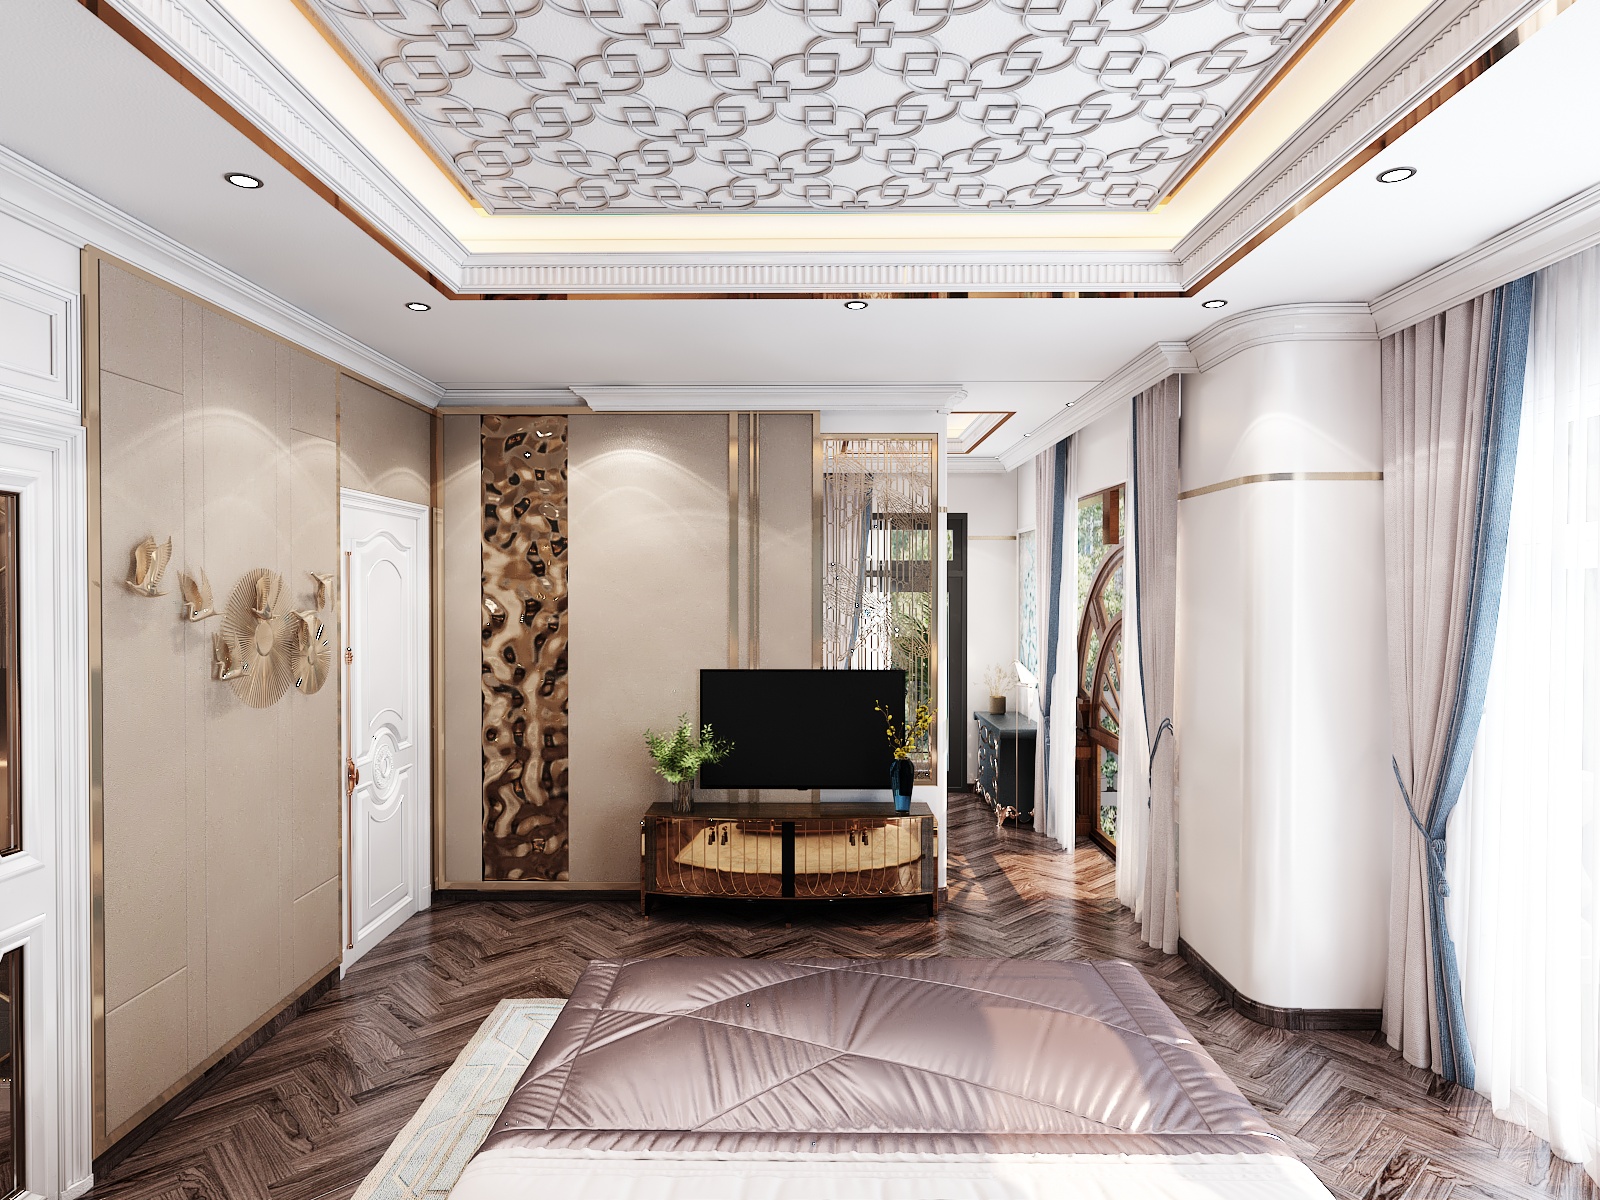 Thiết kế nội thất Biệt Thự tại Hồ Chí Minh BIỆT THỰ BÌNH TÂN 1645236524 37